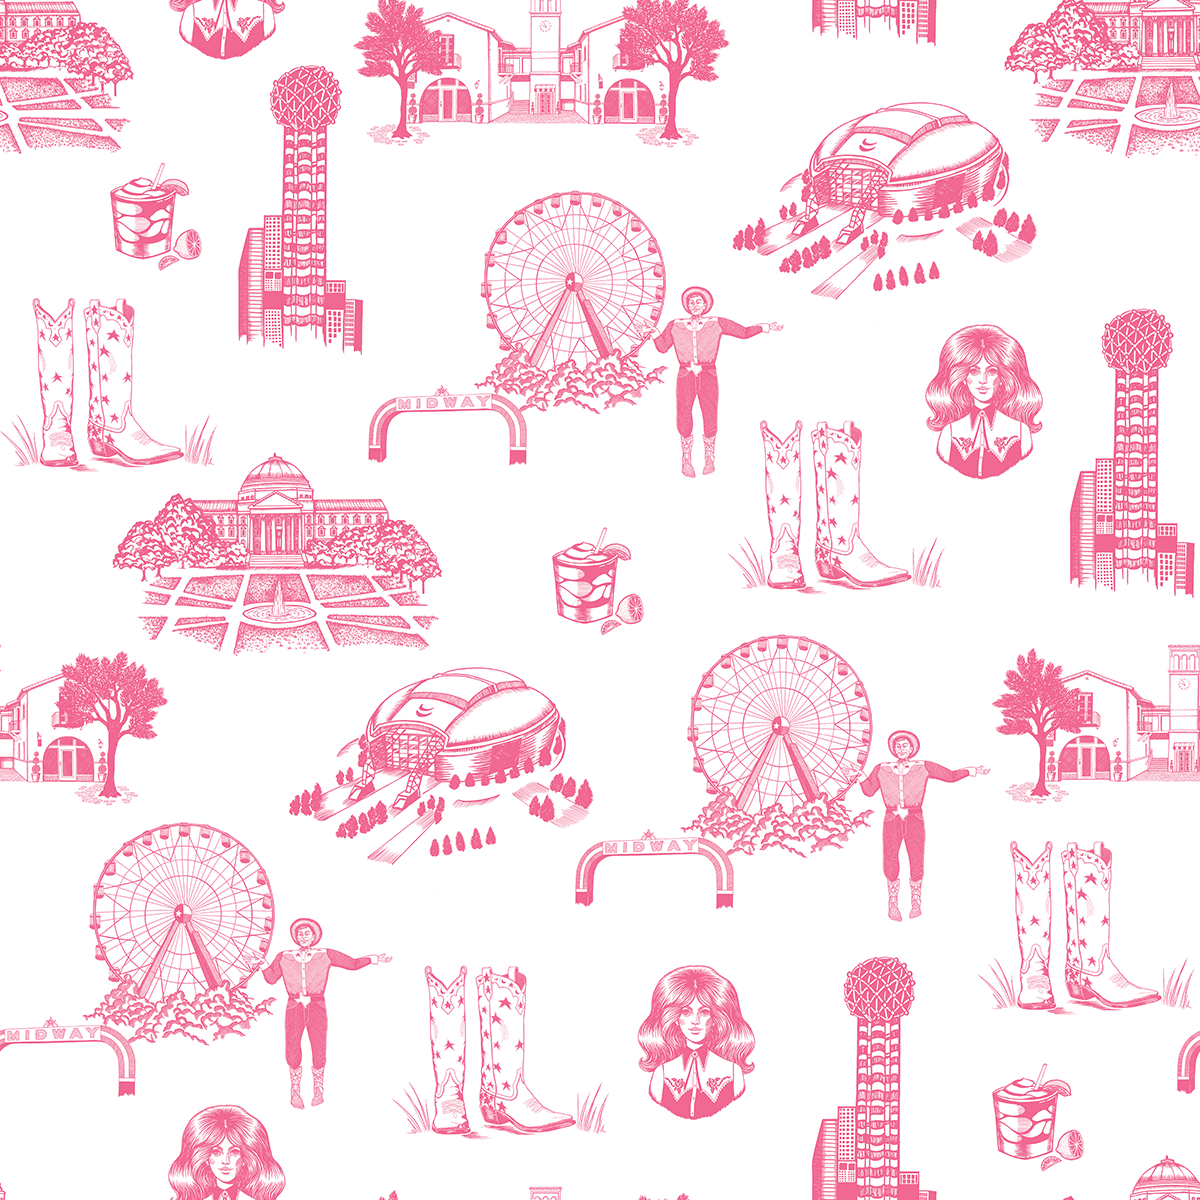 Wallpaper Pink / Sample Dallas Toile Wallpaper dombezalergii